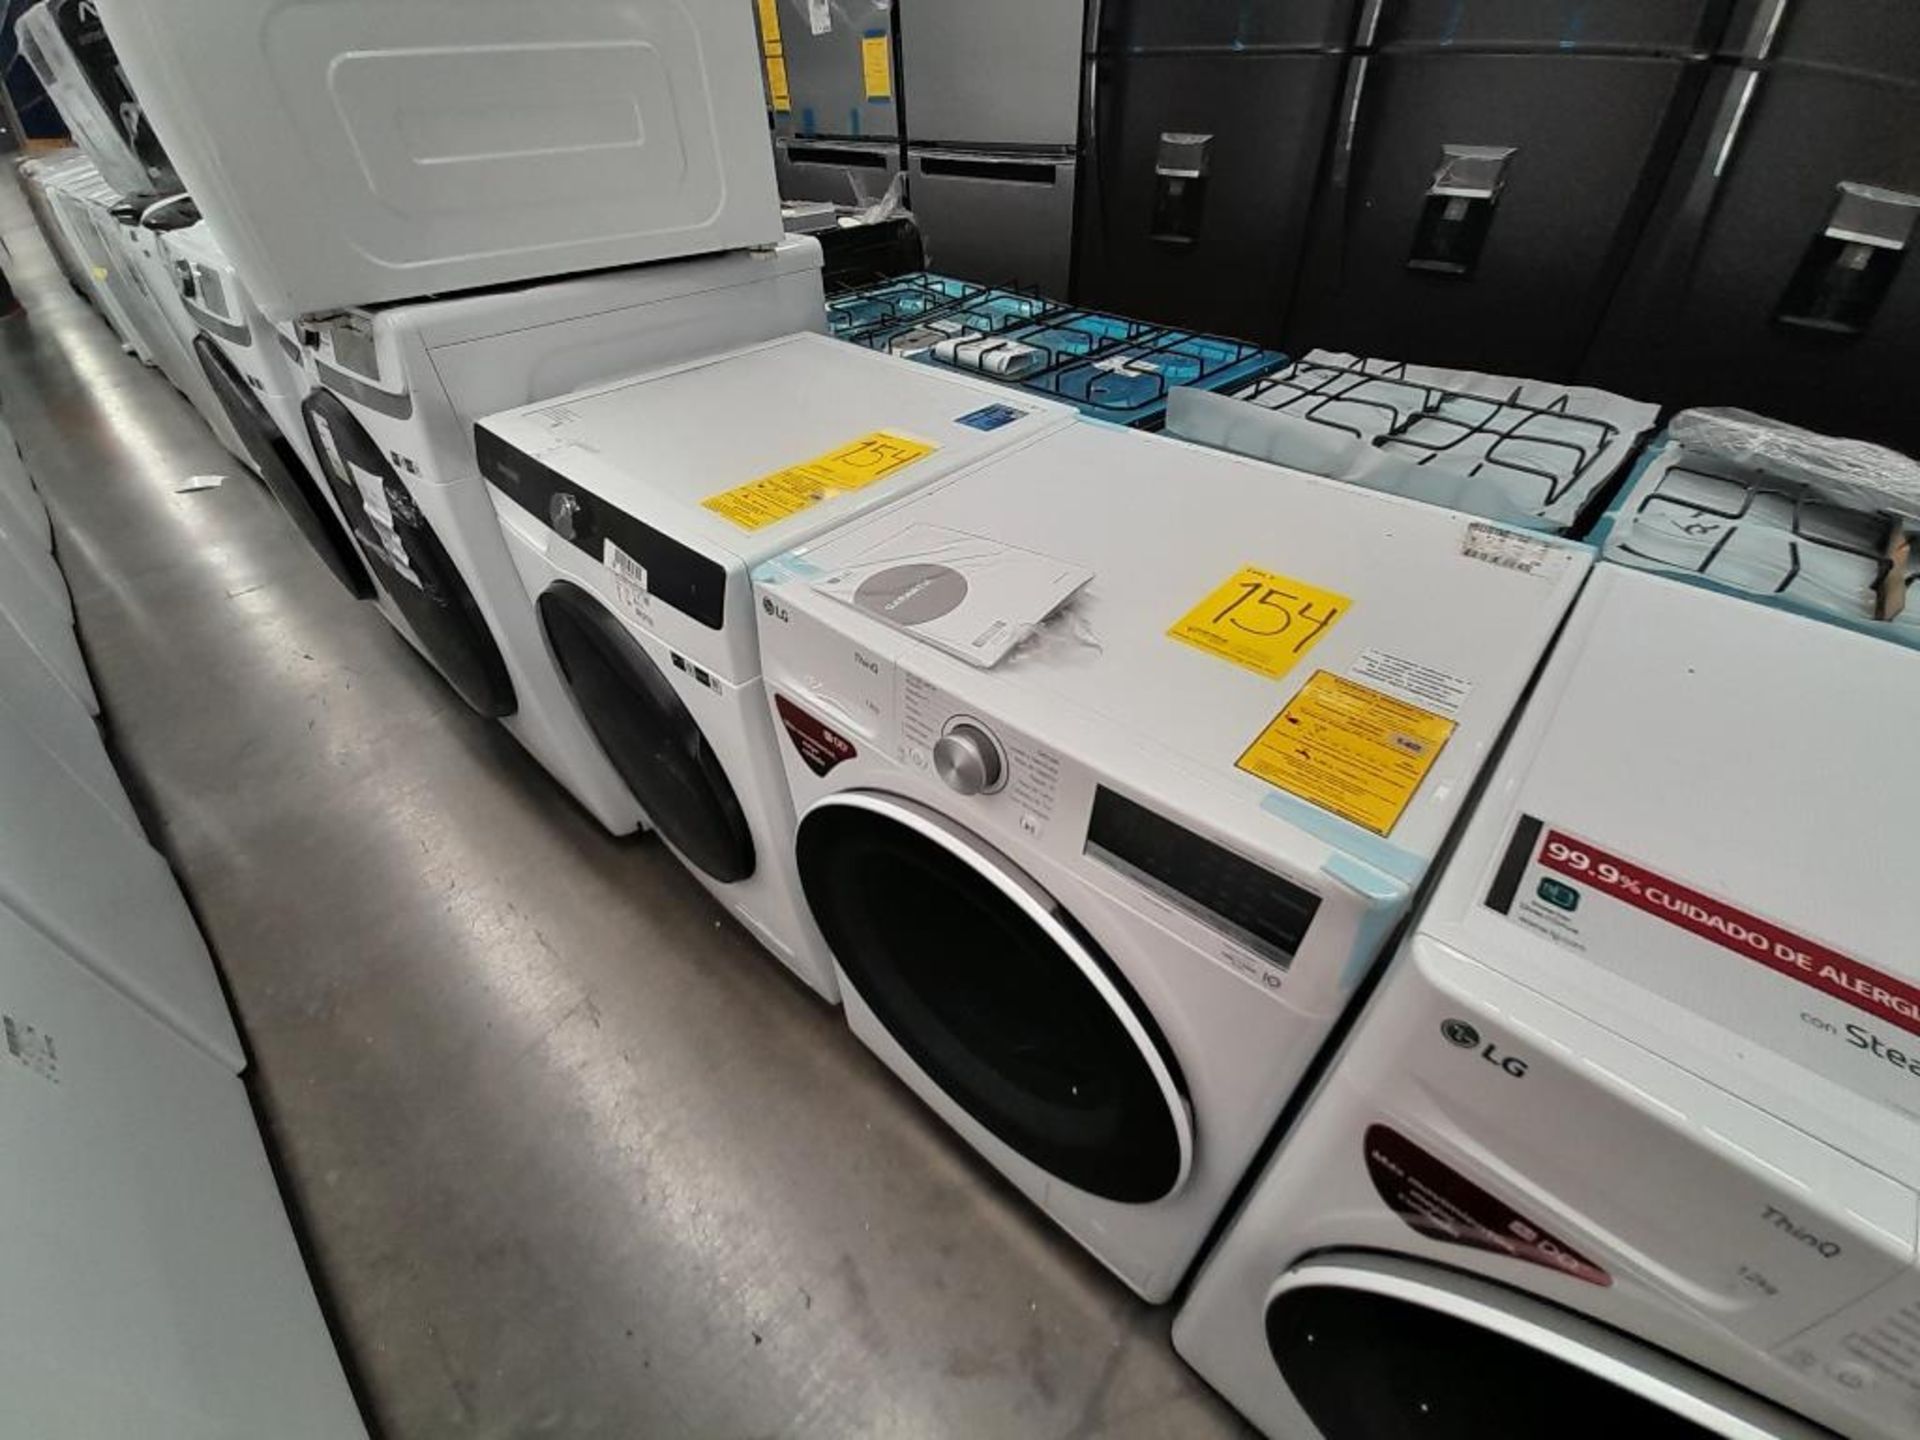 Lote de 2 lavadoras Contiene: 1 Lavasecadora de 12/5 KG Marca SAMSUNG, Modelo 04DBEAX, Serie 00036N - Image 2 of 6